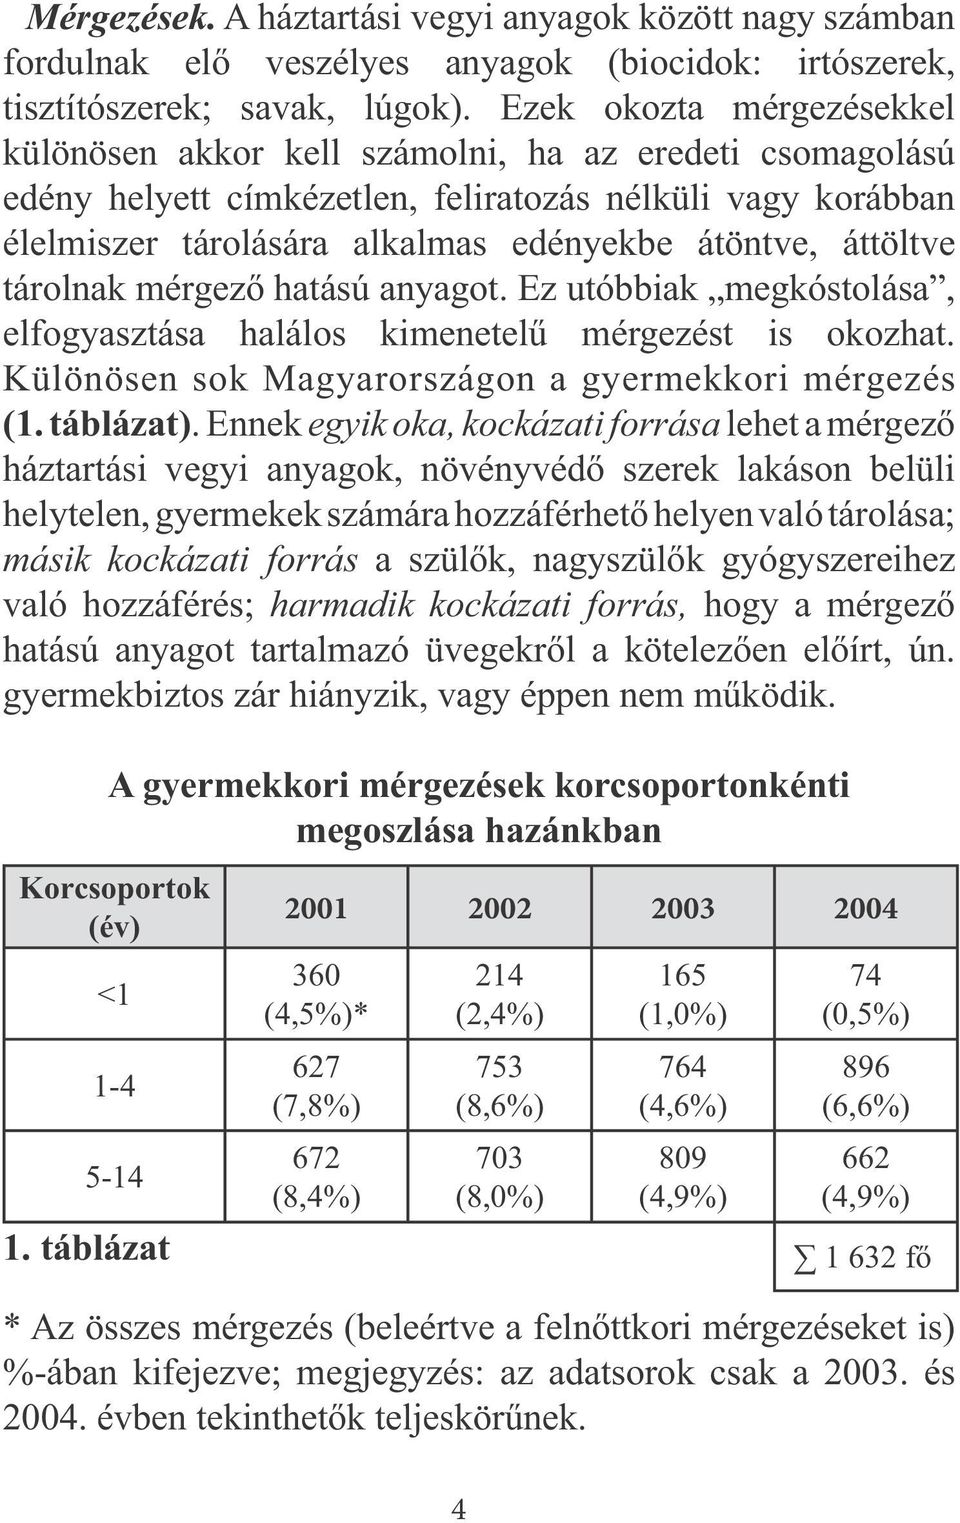 áttöltve tárolnak mérgező hatású anyagot. Ez utóbbiak megkóstolása, elfogyasztása halálos kimenetelű mérgezést is okozhat. Különösen sok Magyarországon a gyermekkori mérgezés (1. táblázat).